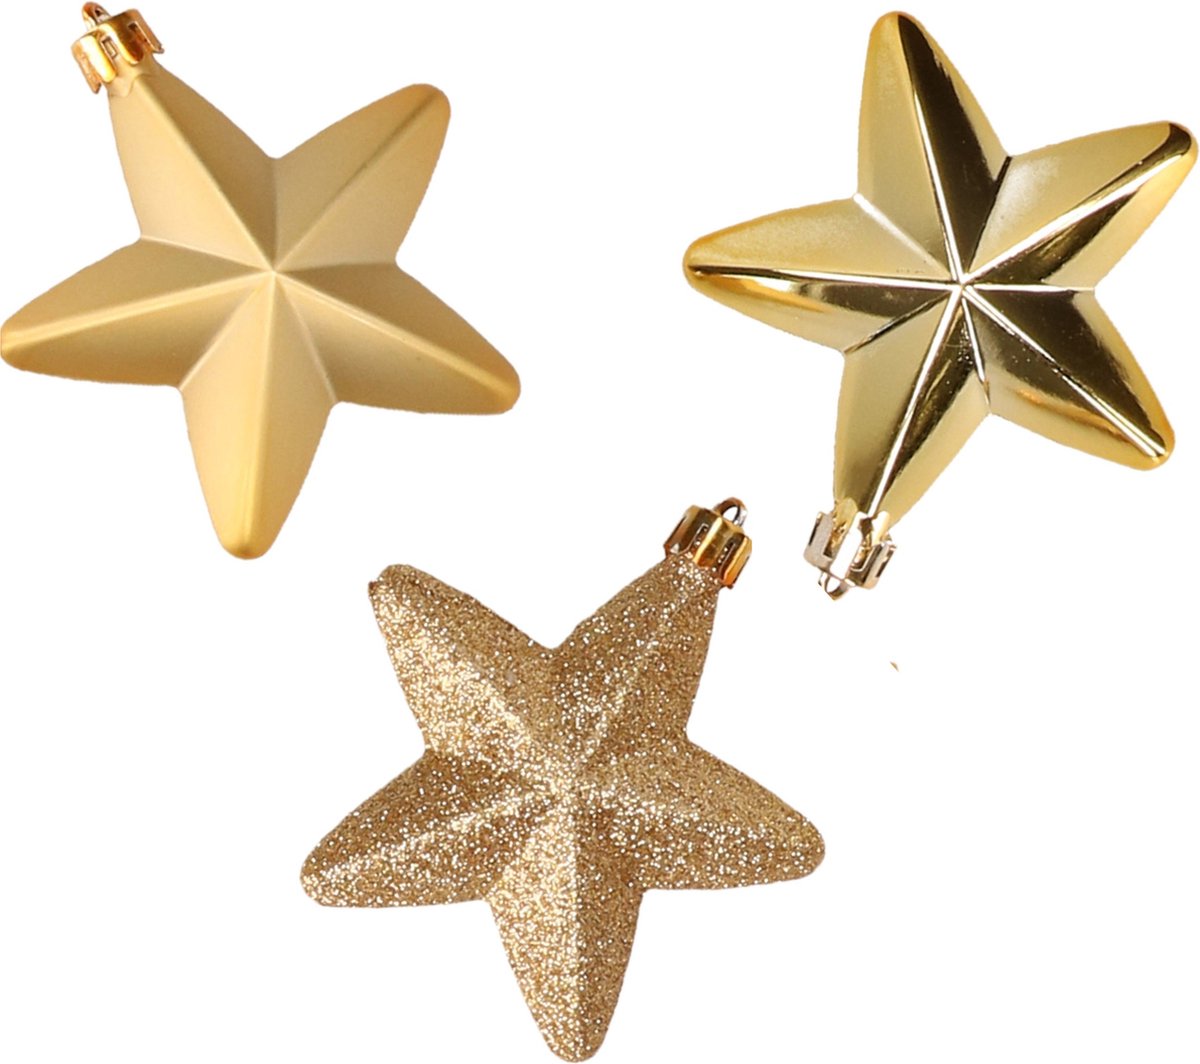 6x stuks kunststof sterren kerstballen 7 cm goud glans/mat/glitter - Kerstboomversiering